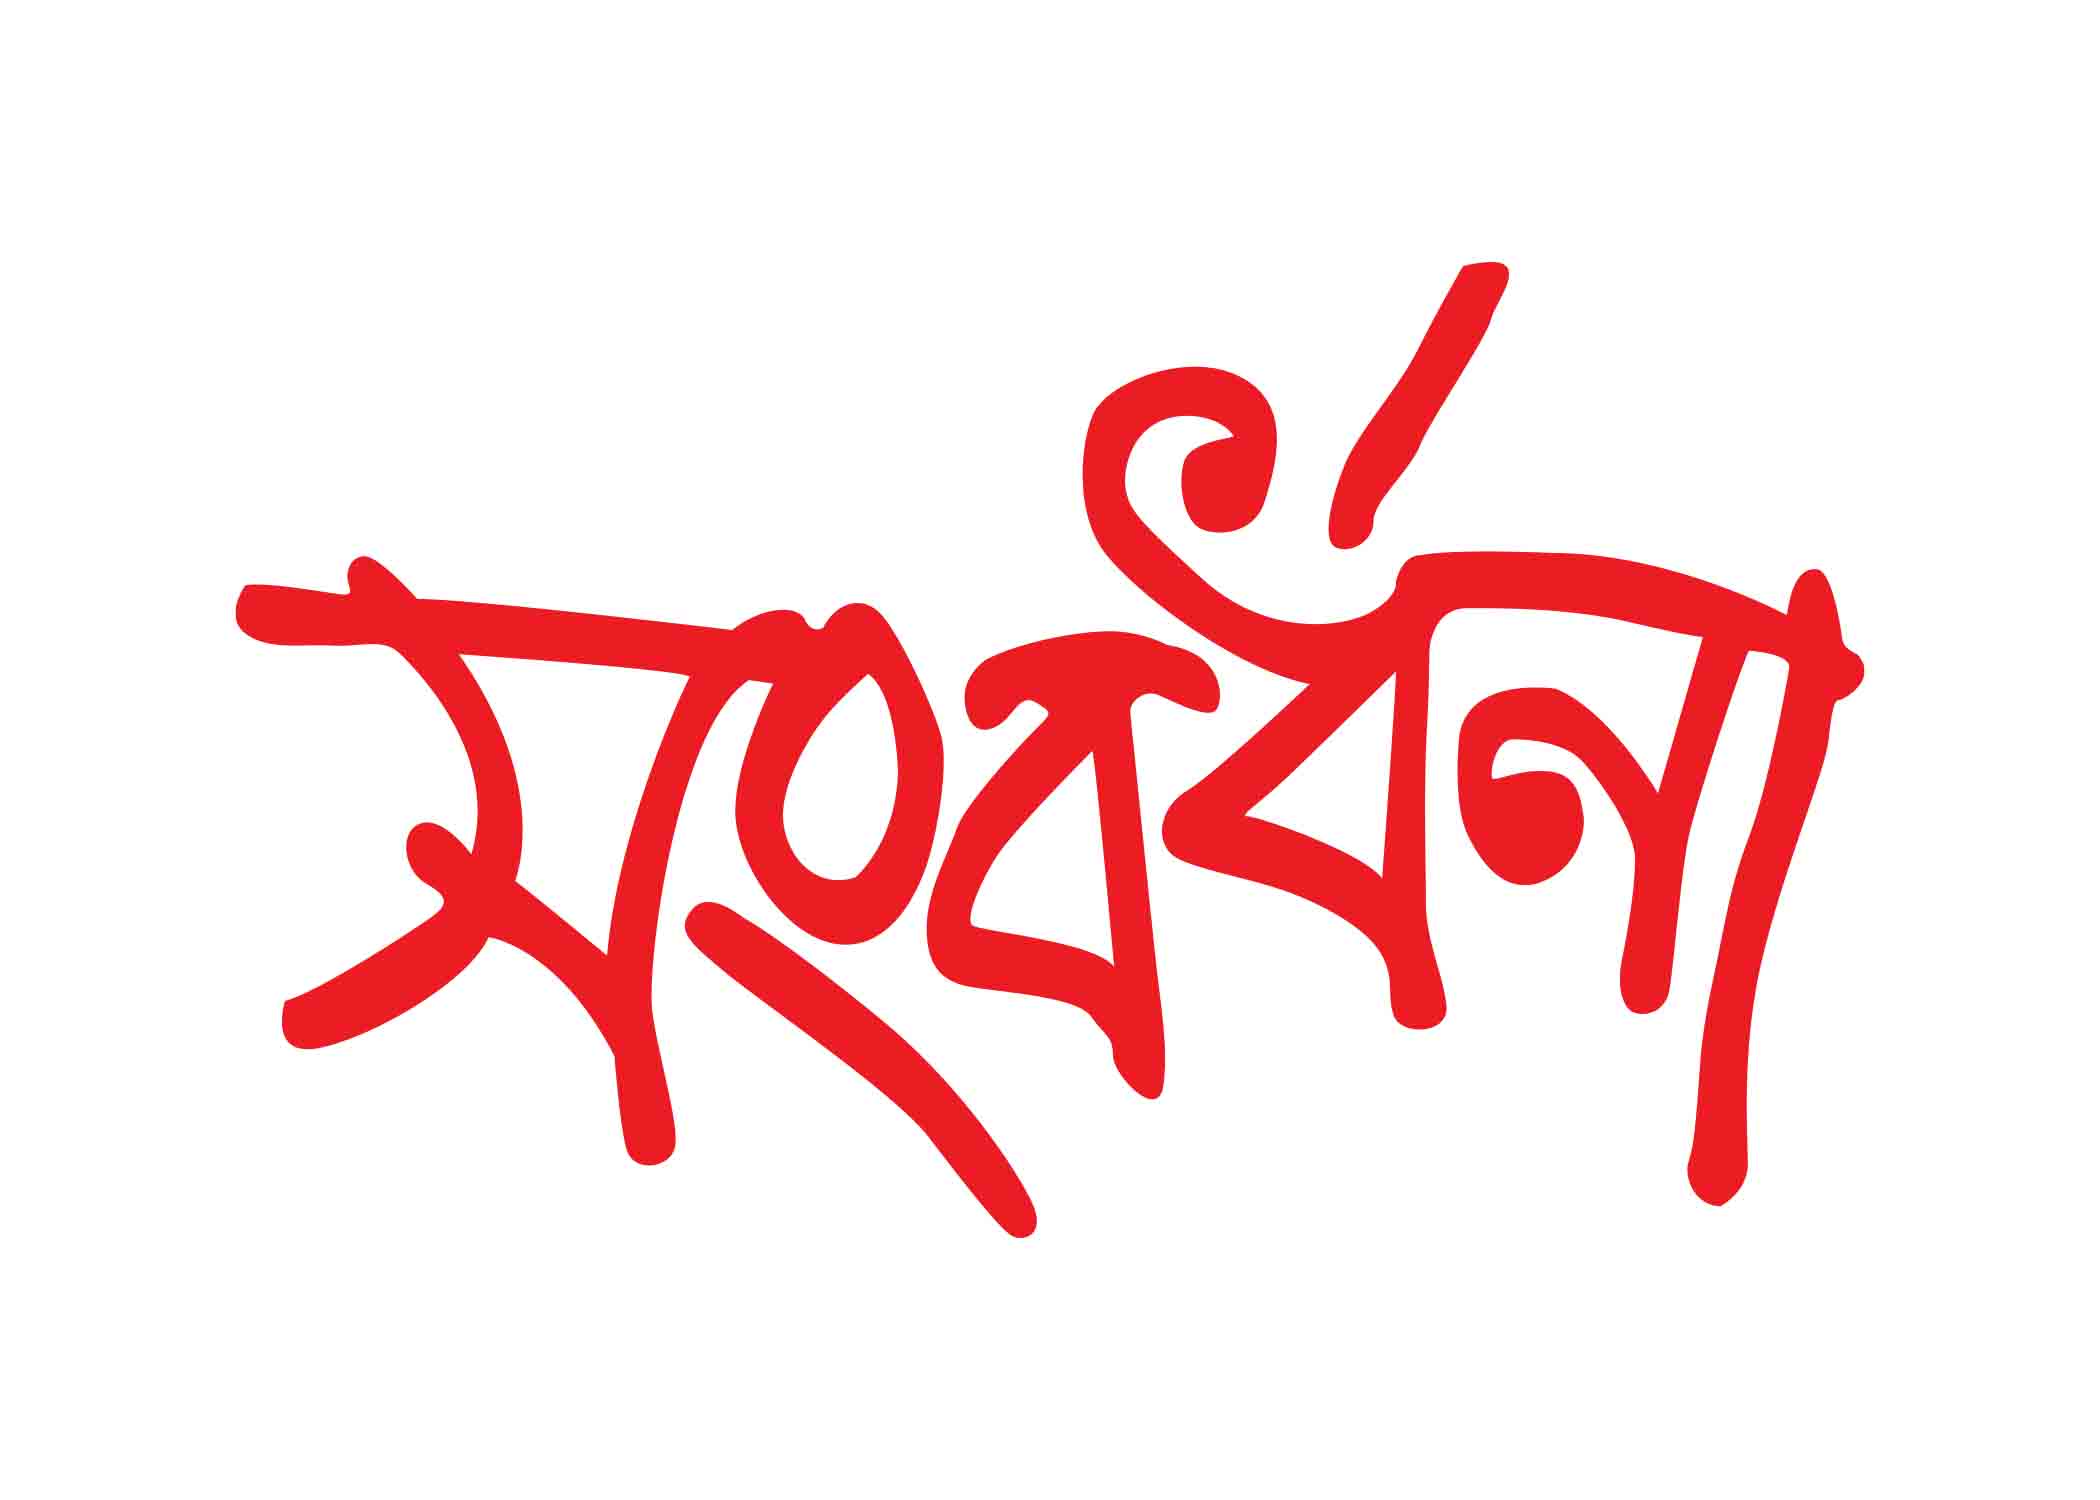 সংবর্ধনা টাইপোগ্রাফি । Bangla Typhography PNG